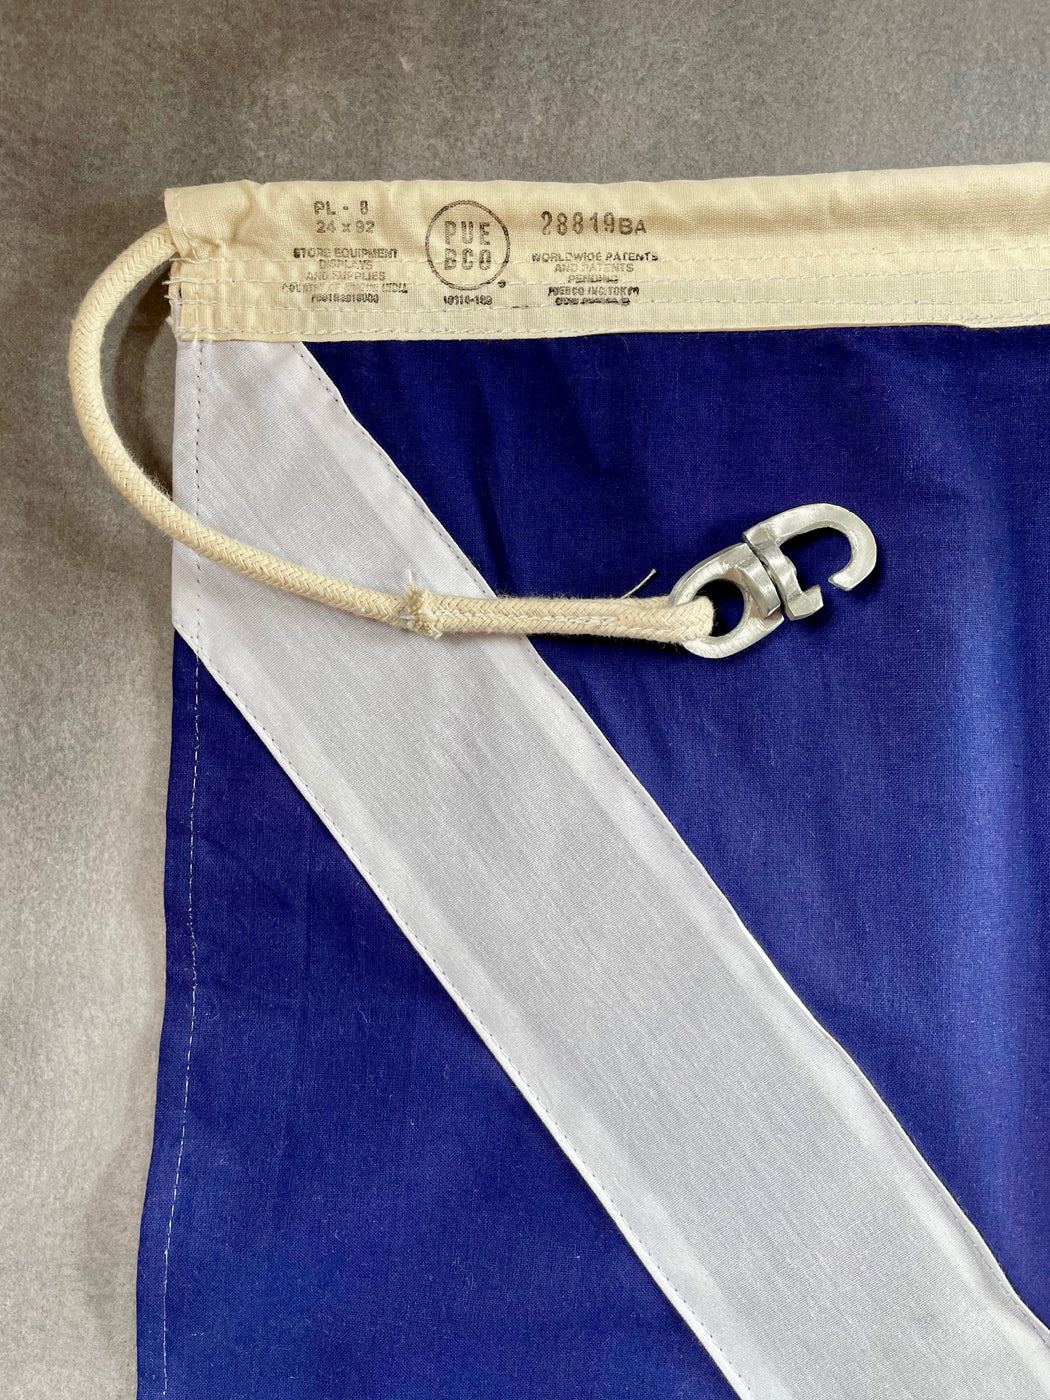 Nautical Flag Apron - White X